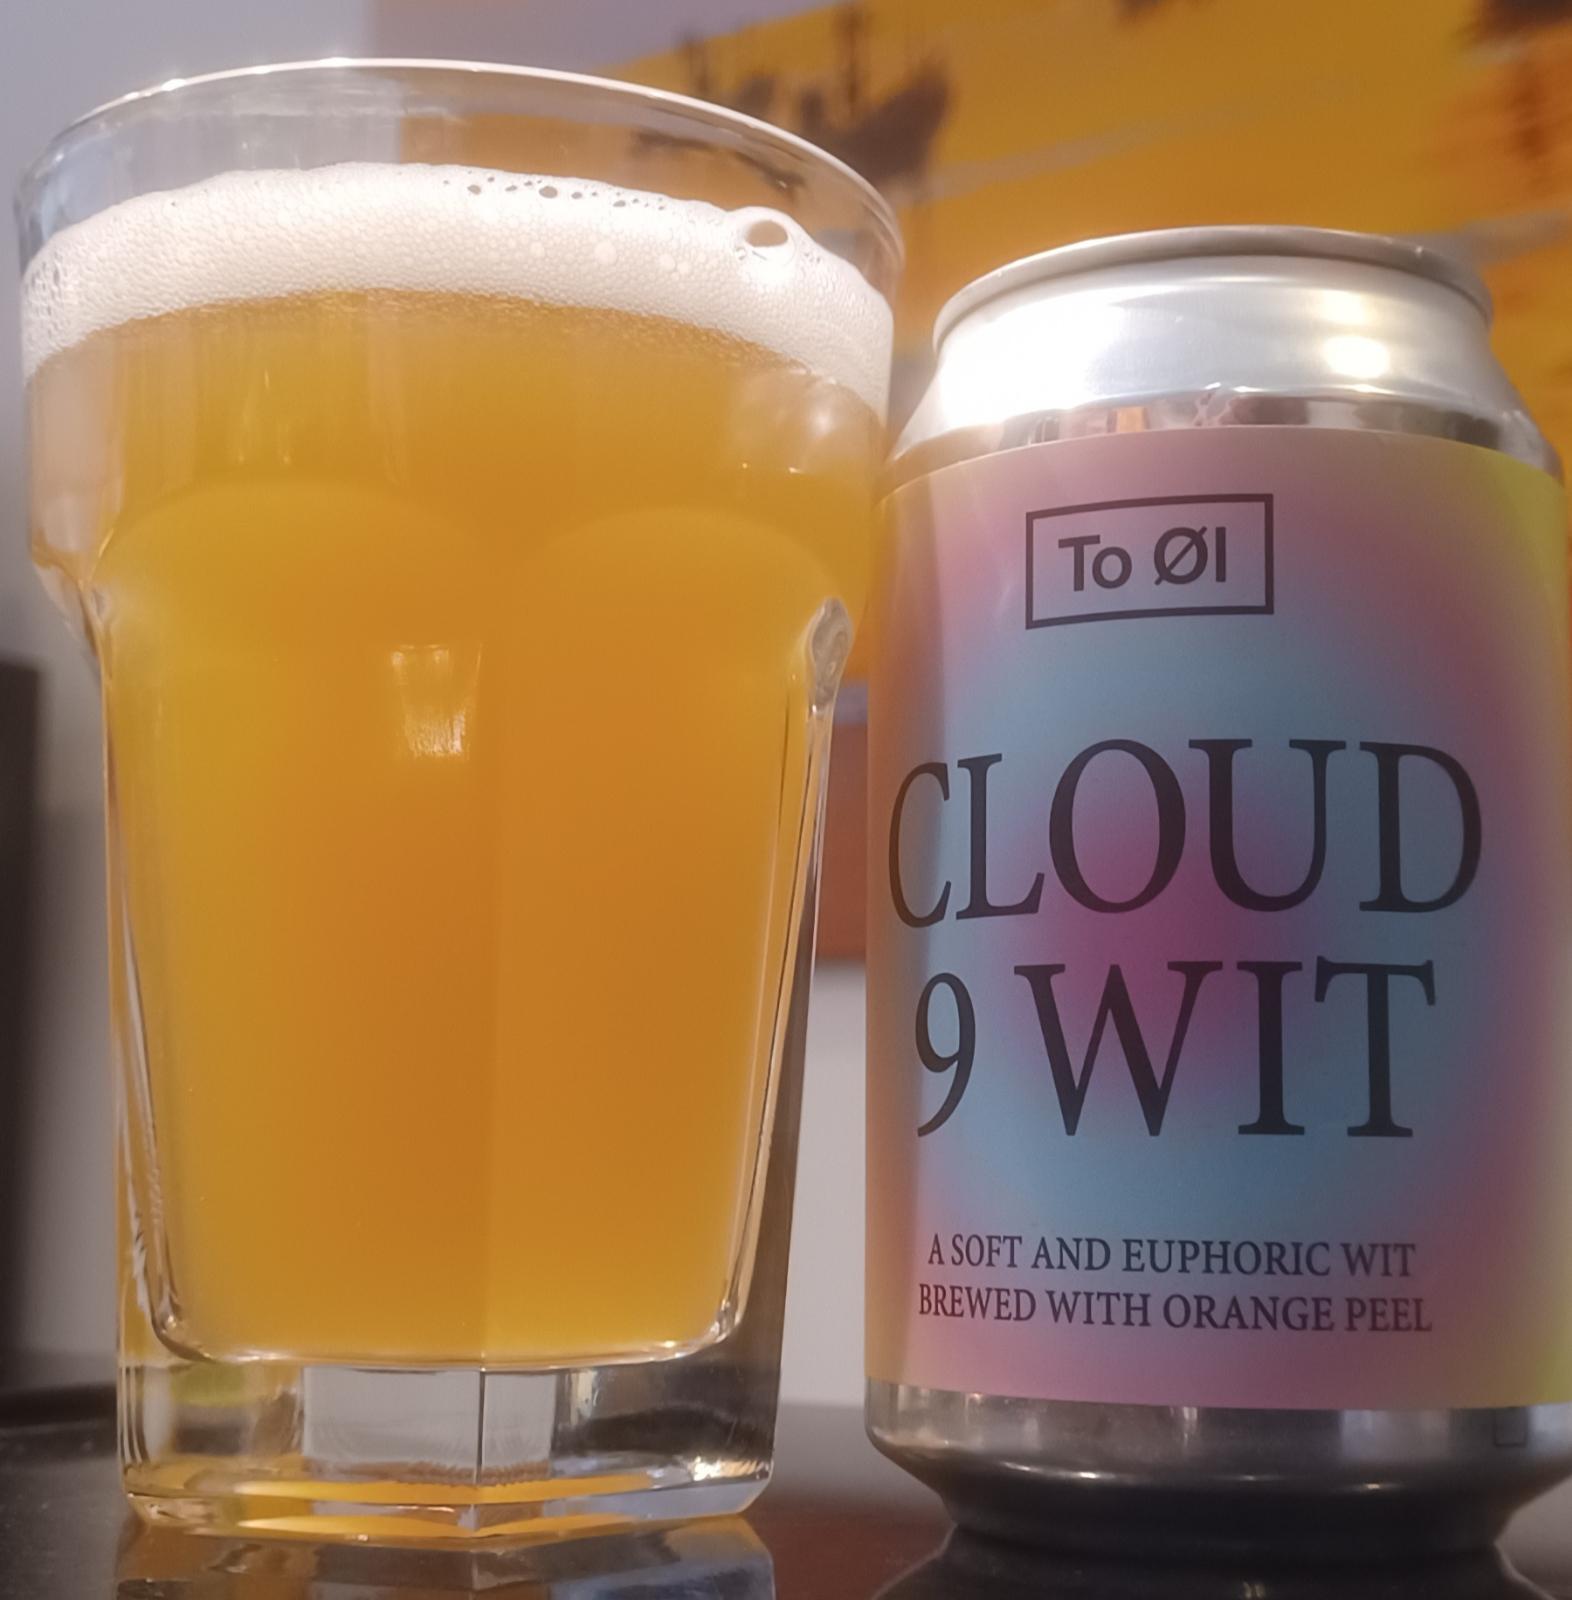 Cloud 9 Wit